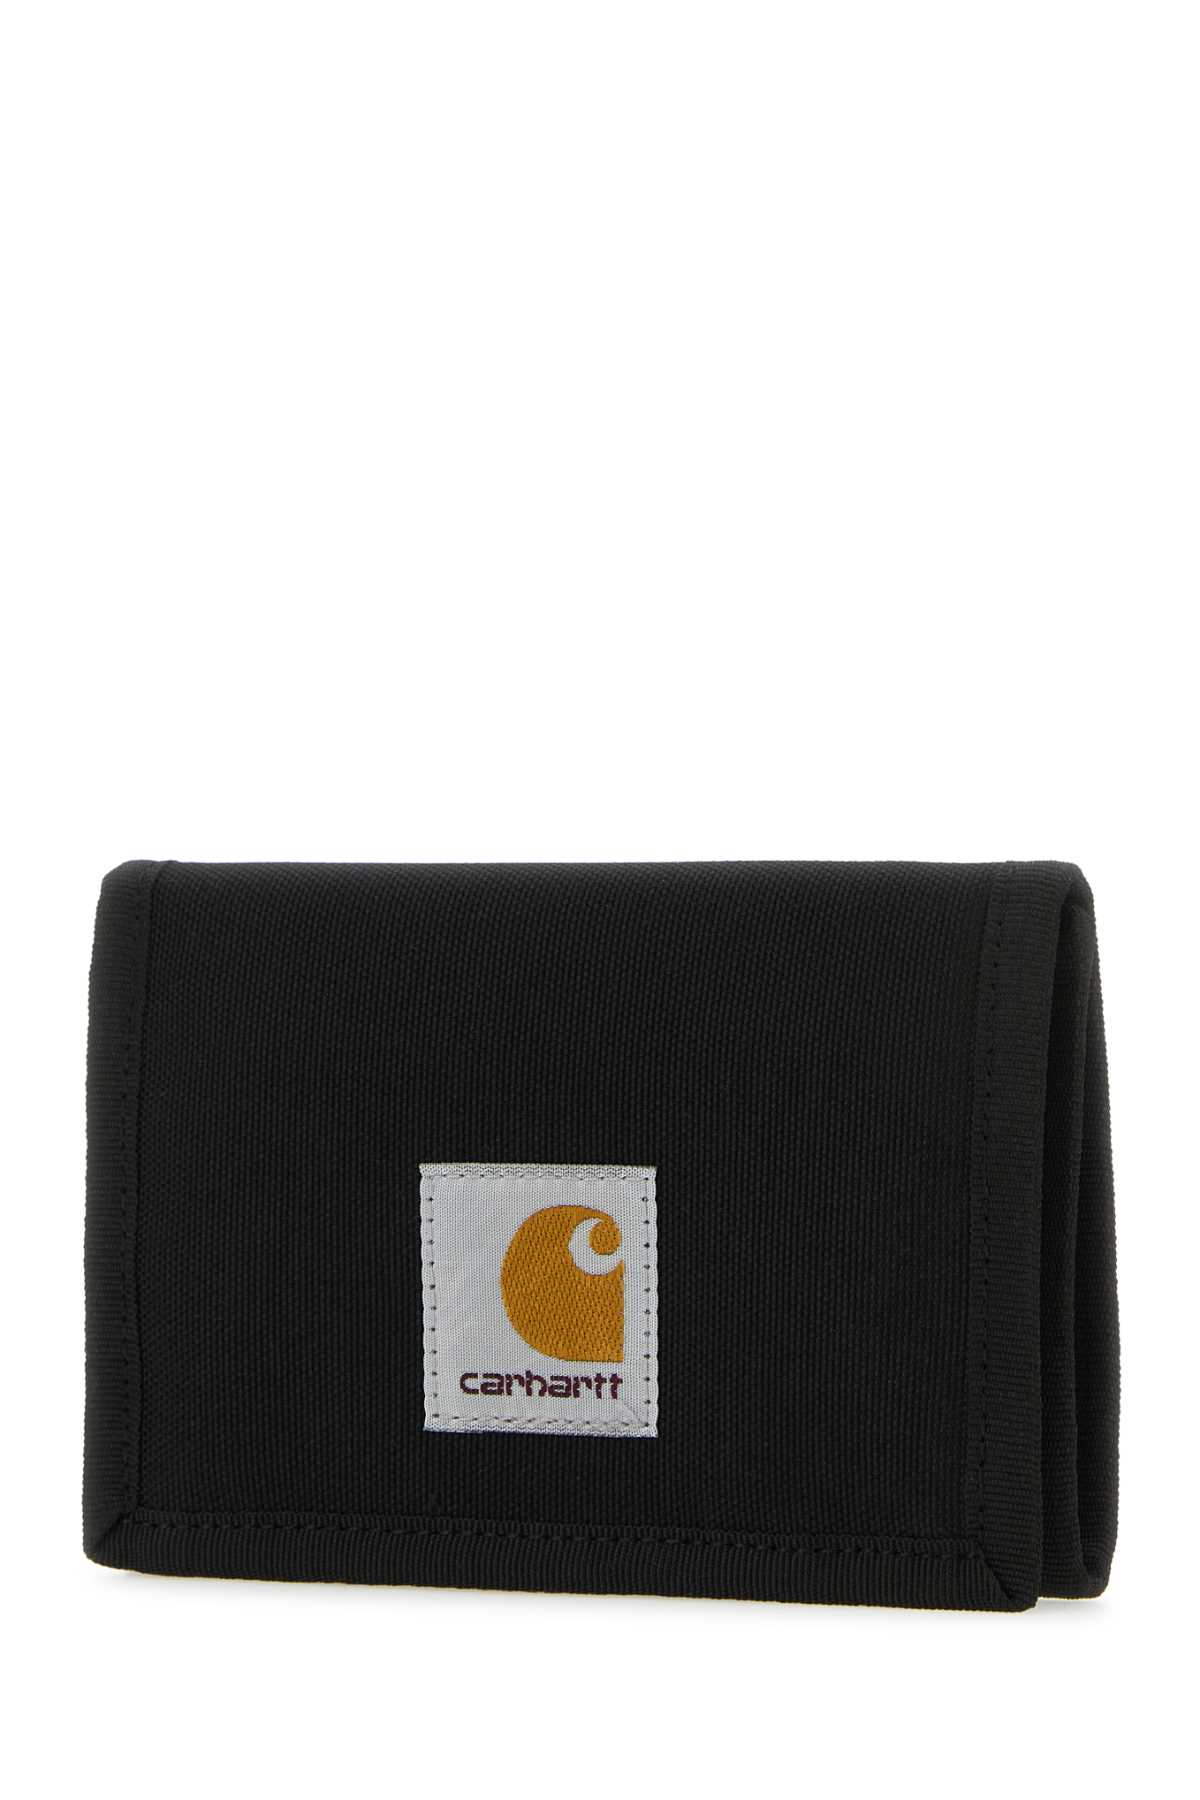 Shop Carhartt Black Fabric Alec Wallet